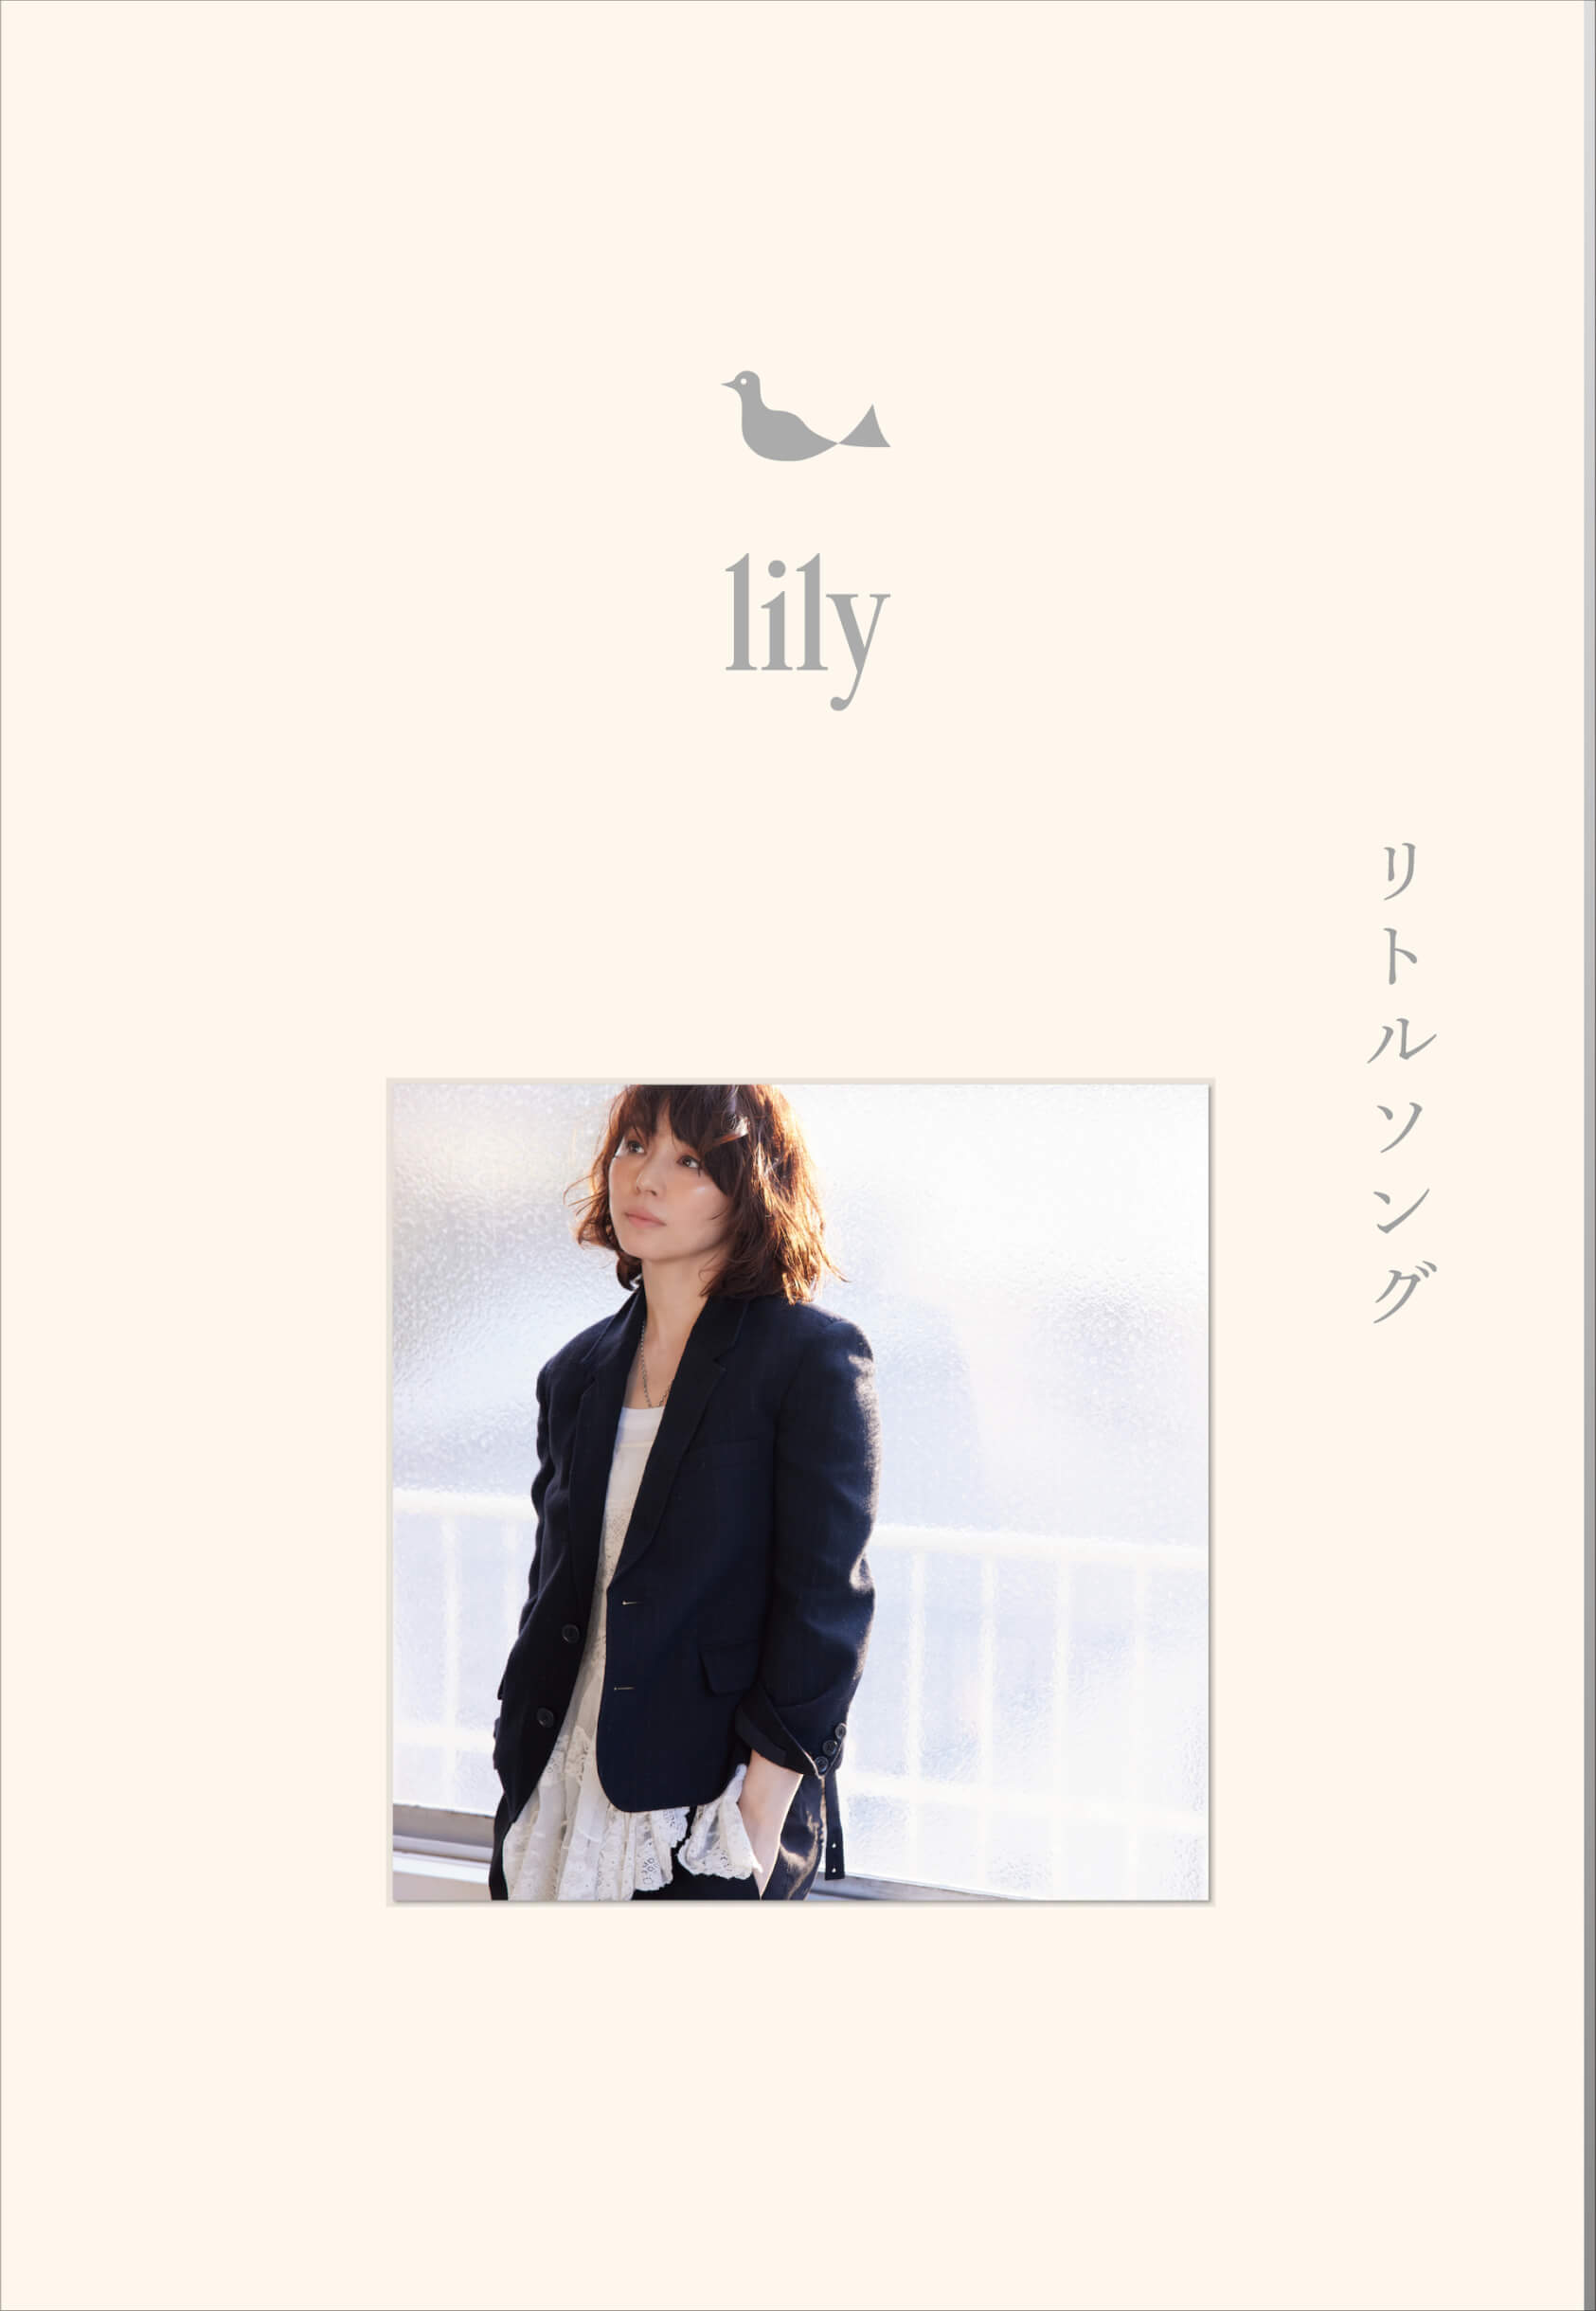 石田ゆり子の音楽活動プロジェクト・lily、大橋トリオがプロデュースしたミニアルバム『リトルソング』をリリース｜本人コメントも到着 music221026_lily-01